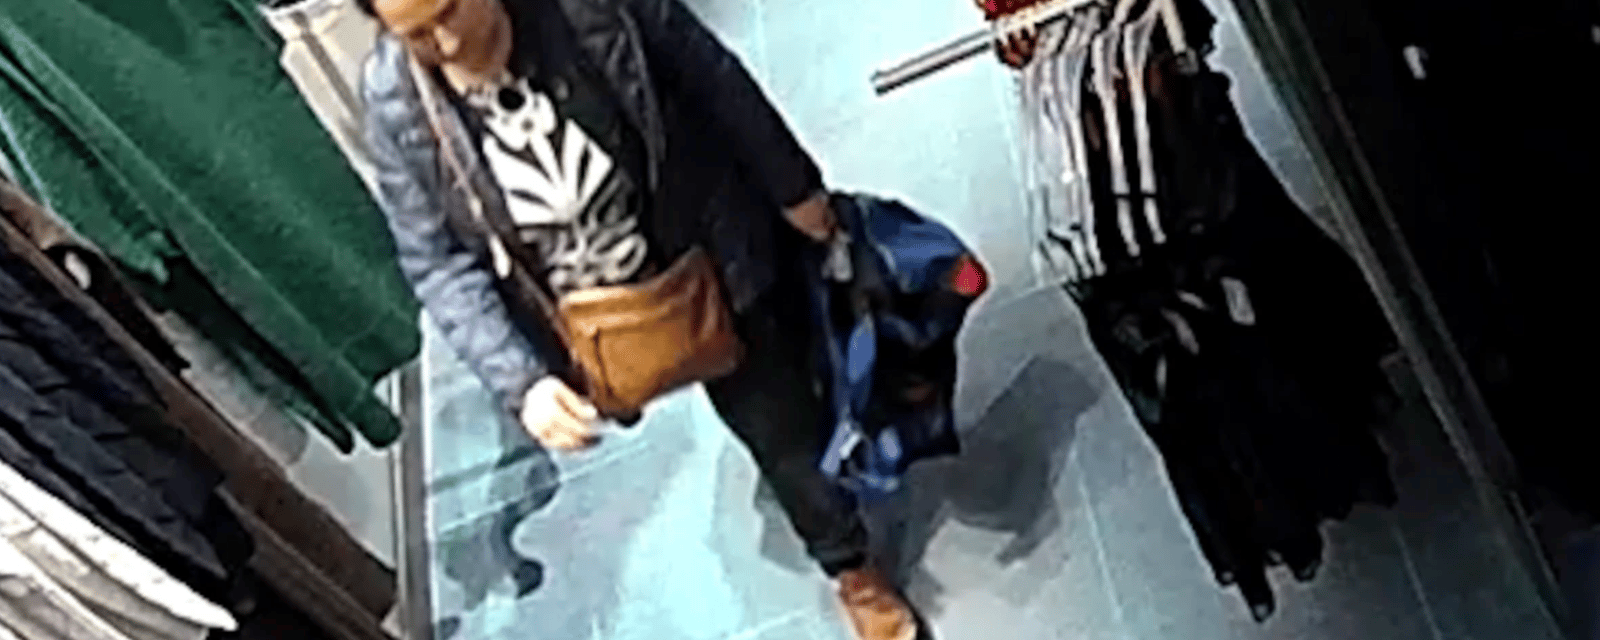 La police est à la recherche d'une femme suspectée d'un vol de plus de 1000$ dans un magasin